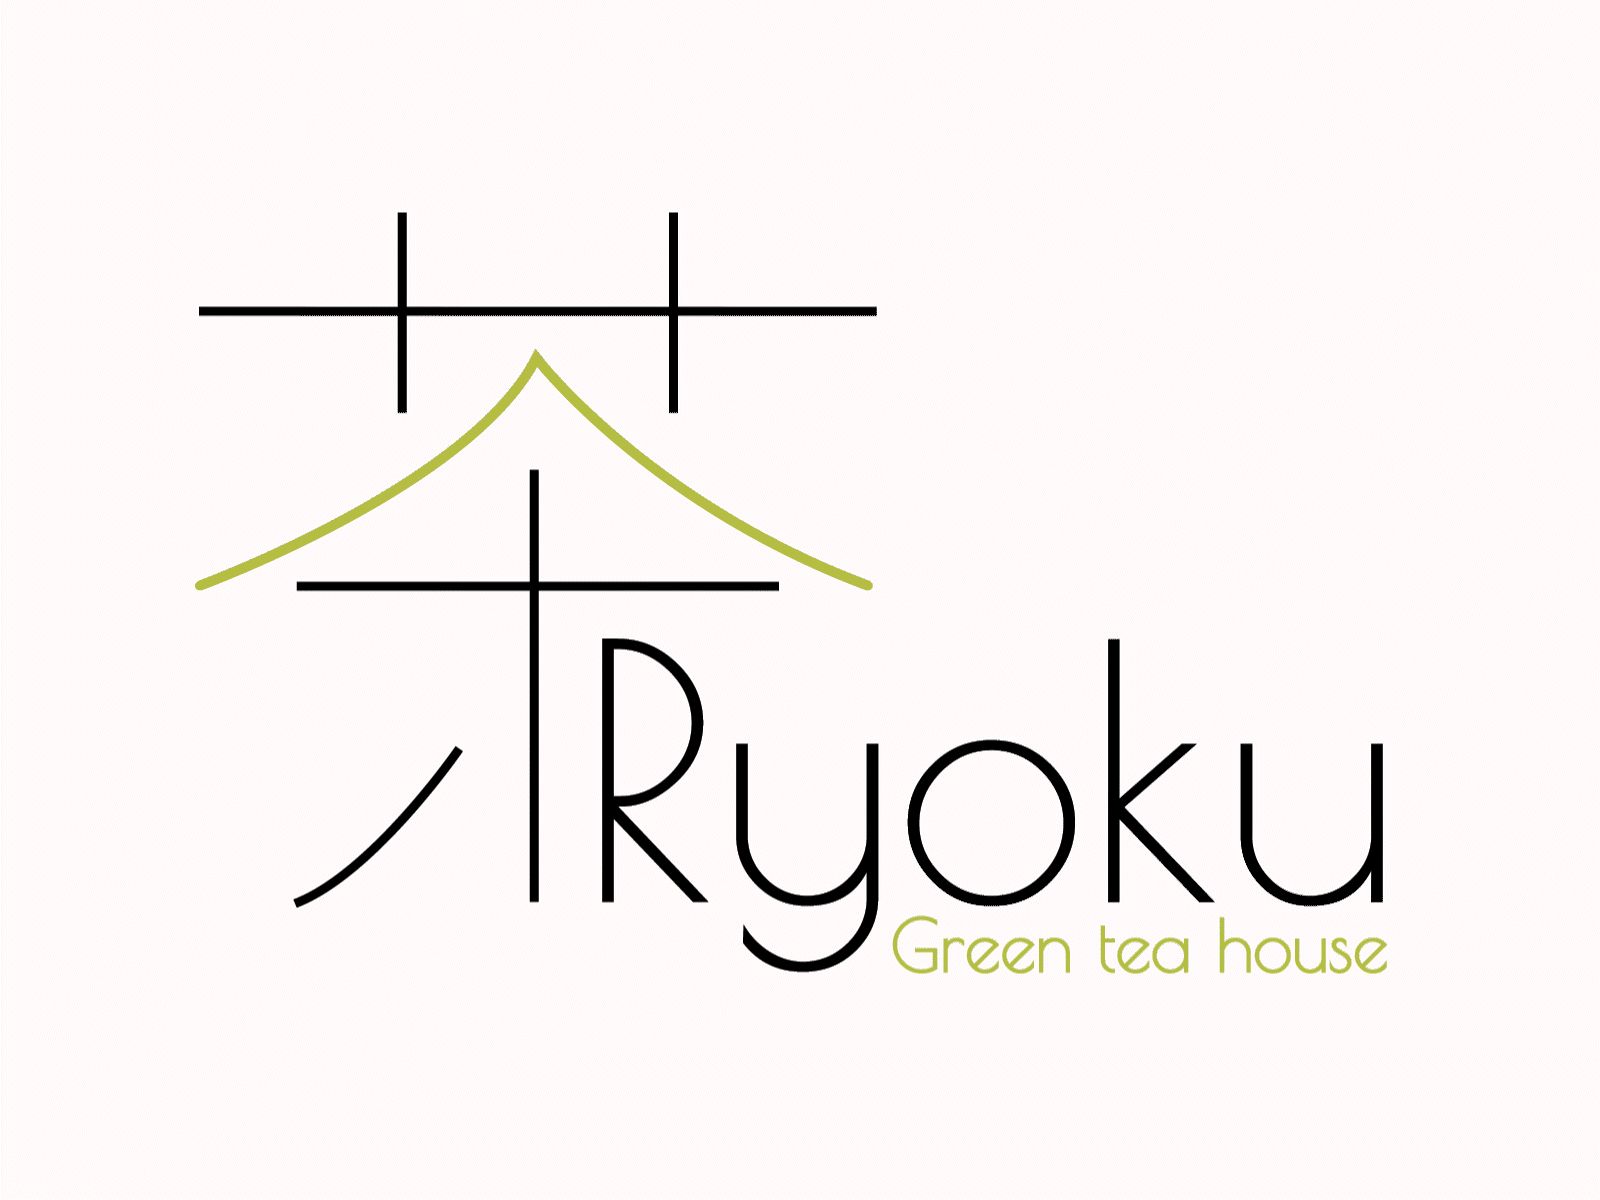 Ryoku green tea house